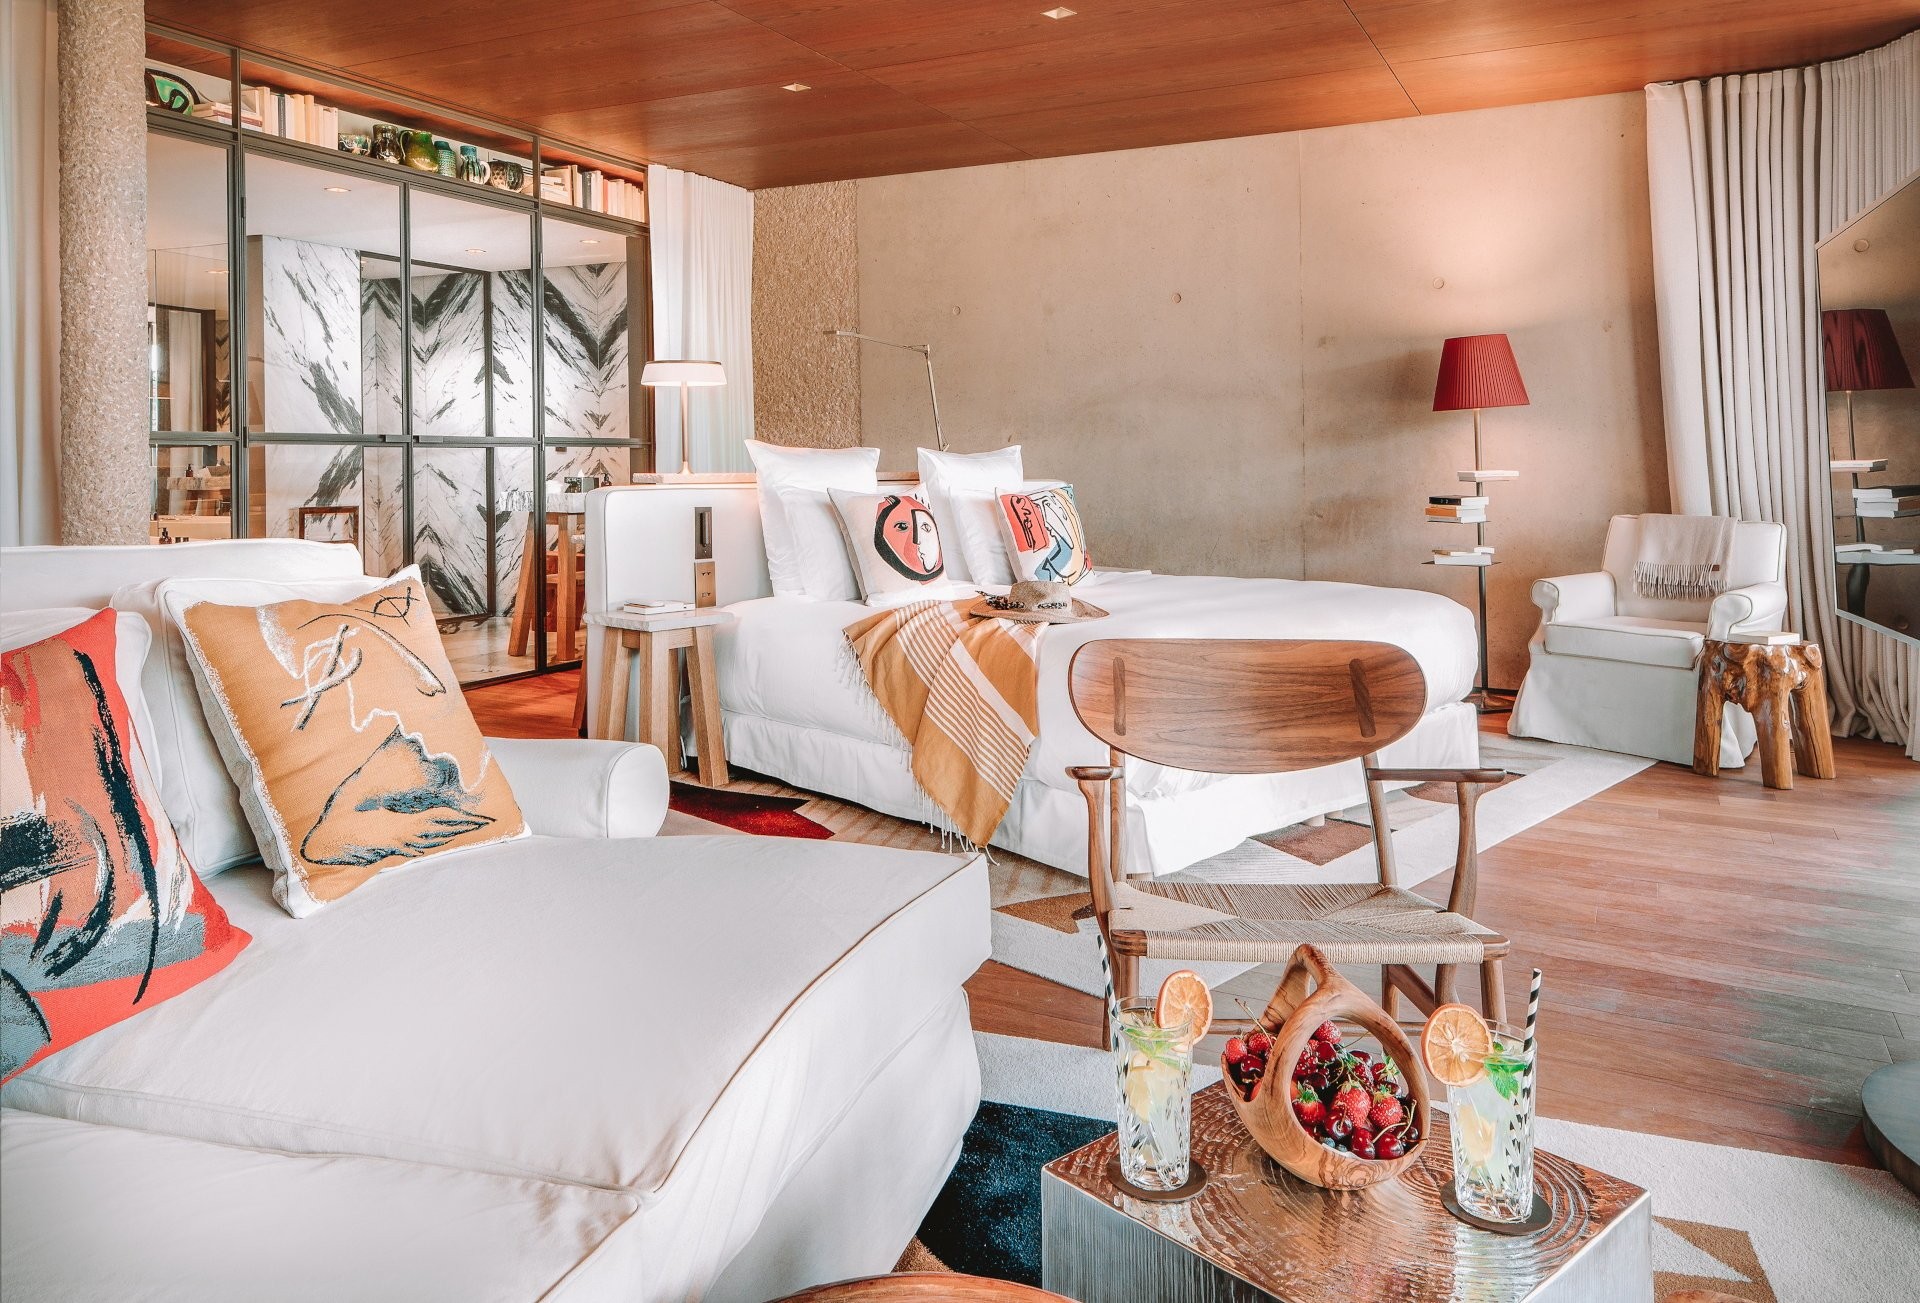 Philippe Starck – Huyền thoại thiết kế thay đổi ngành khách sạn thế giới đã chọn hợp tác một dự án tại Việt Nam